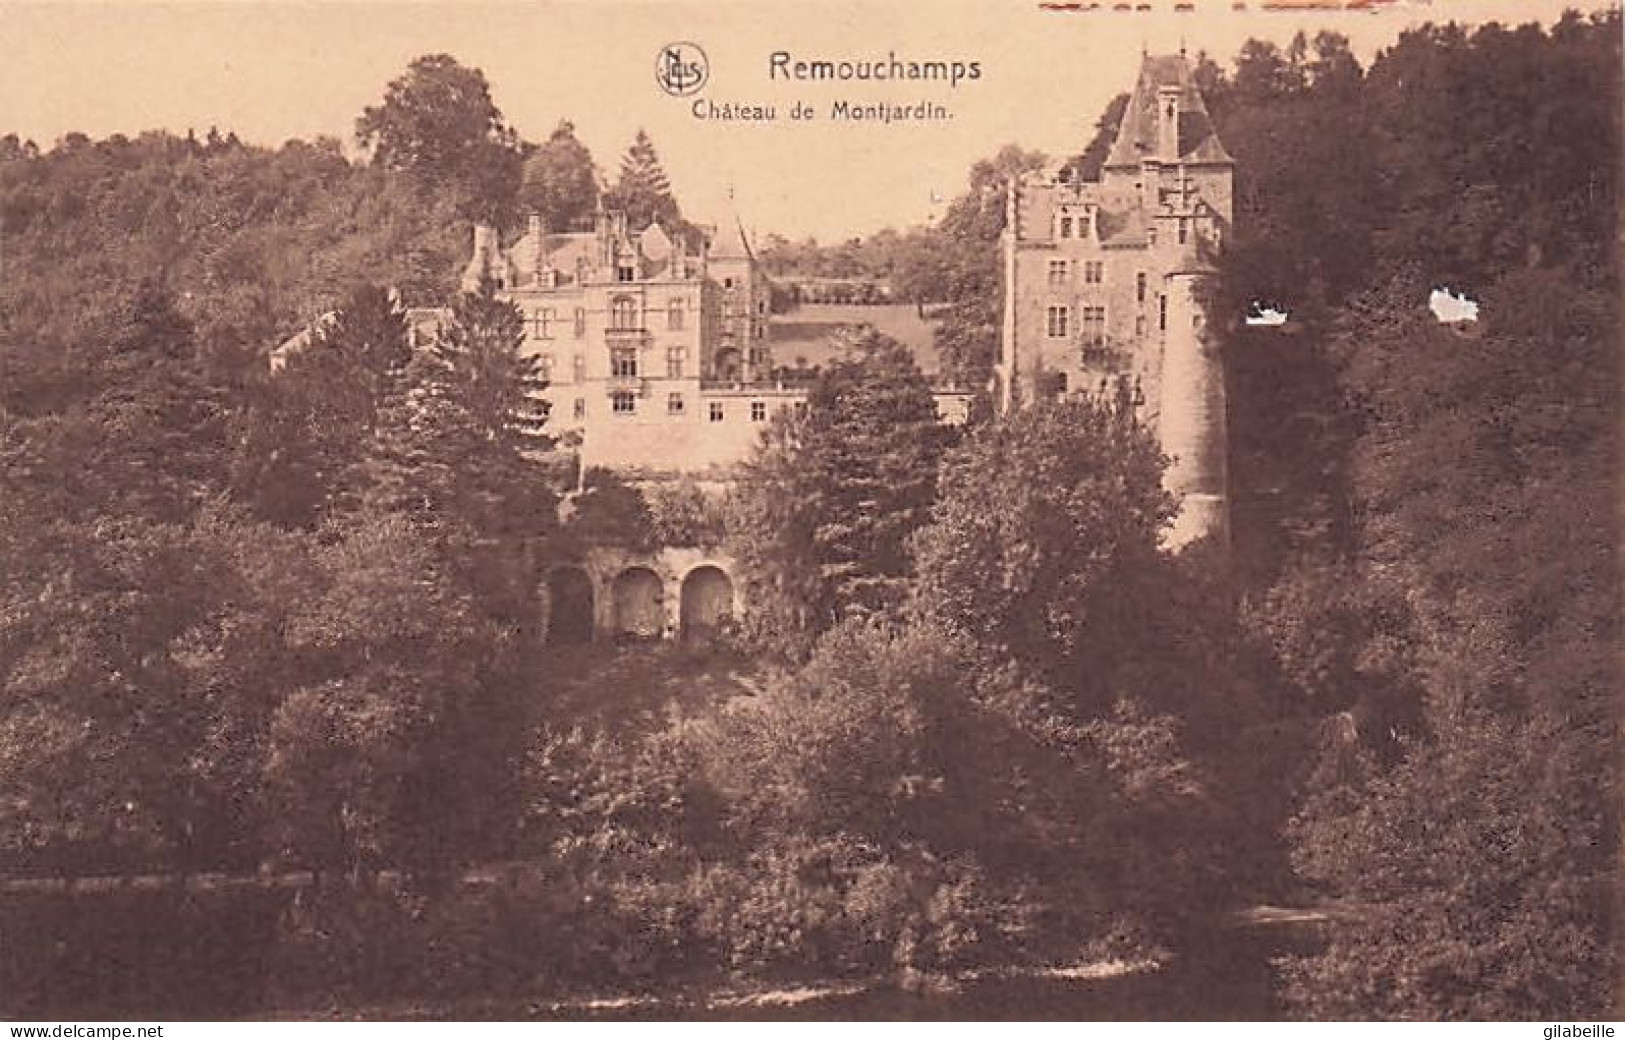 REMOUCHAMPS - Chateau Monjardin - Amblève - Amel